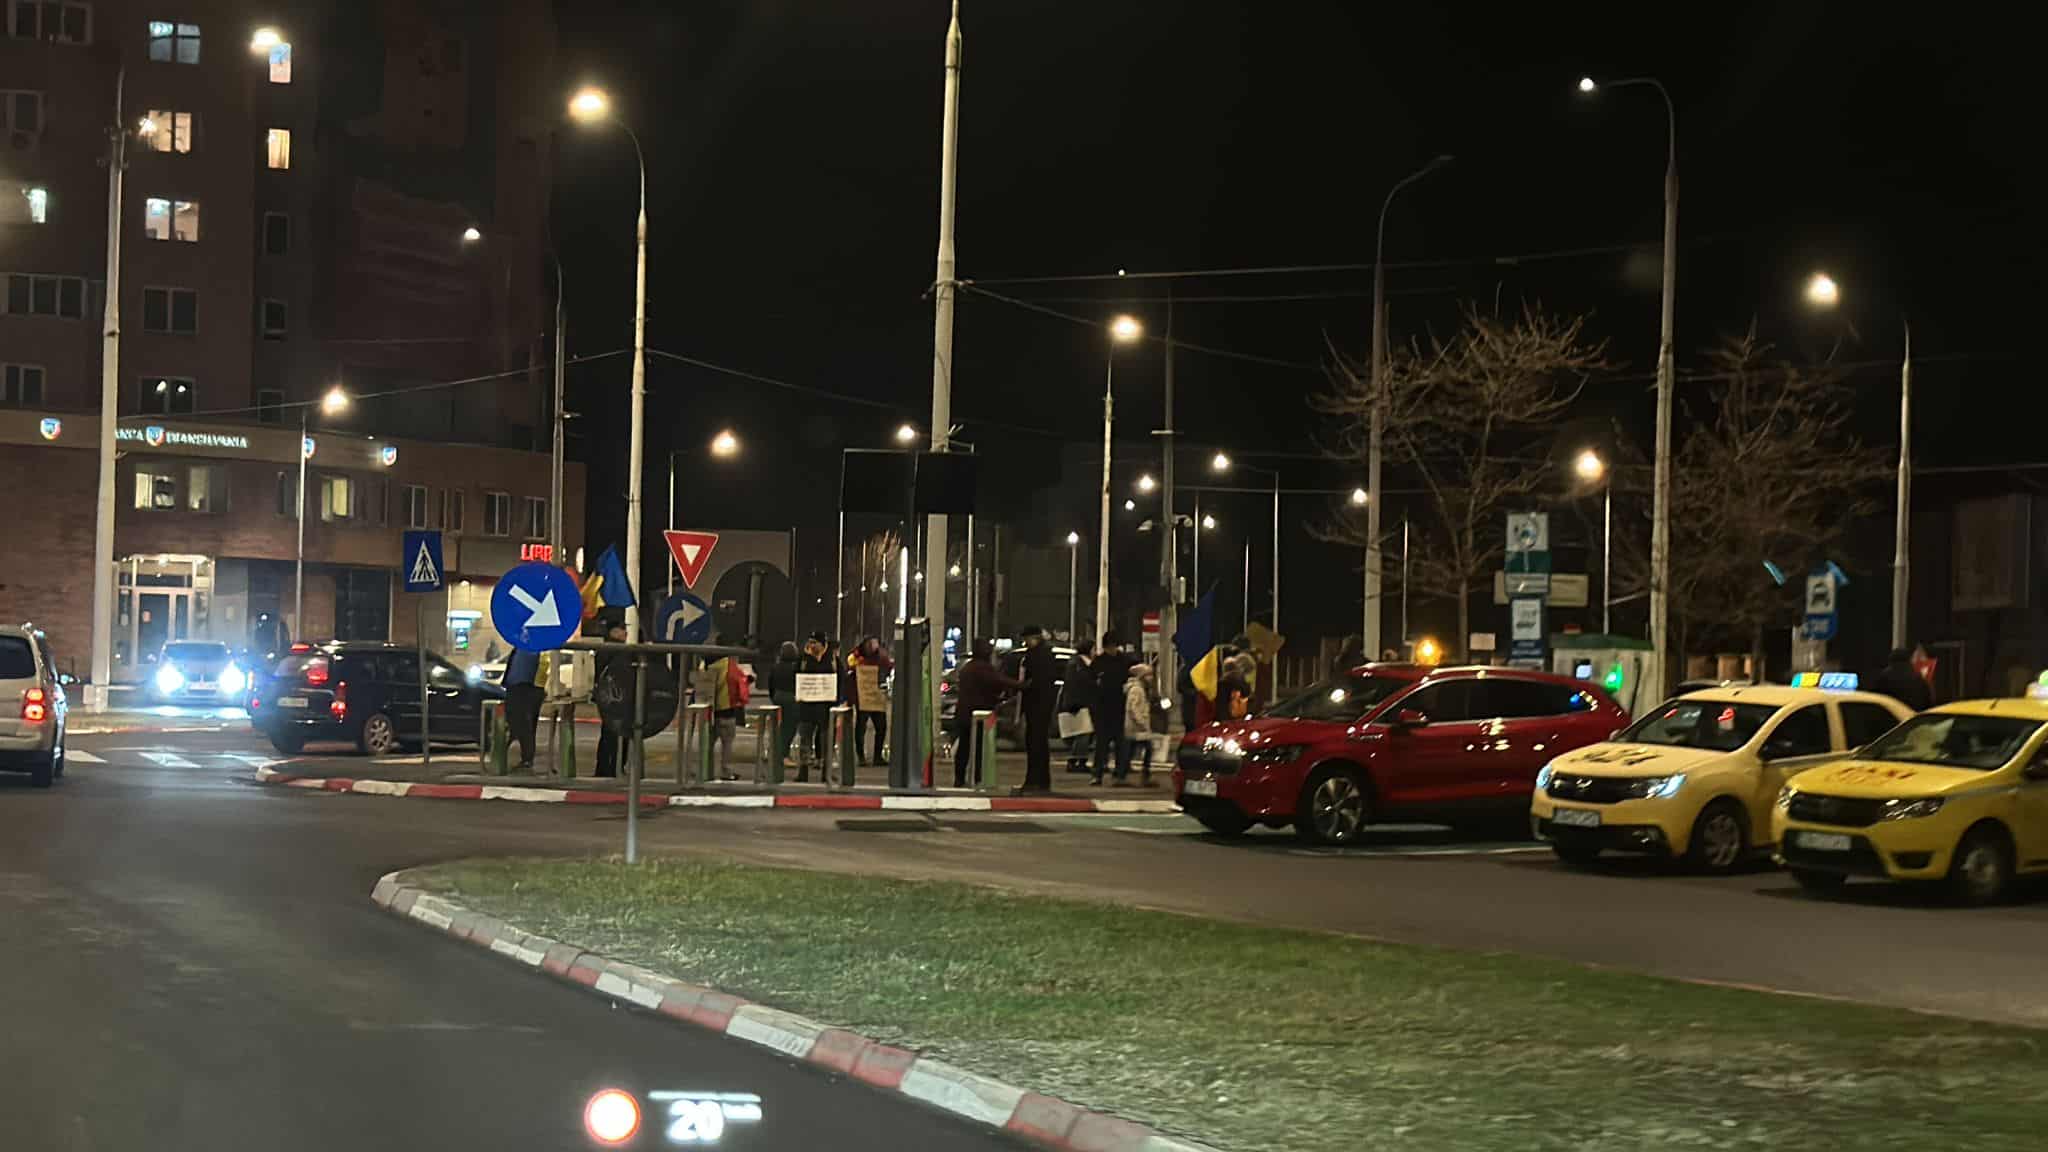 protestul împotriva măsurilor fiscale nu a avut succes la sibiu. aproximativ 20 oameni au ieșit în stradă, vineri seară (foto)